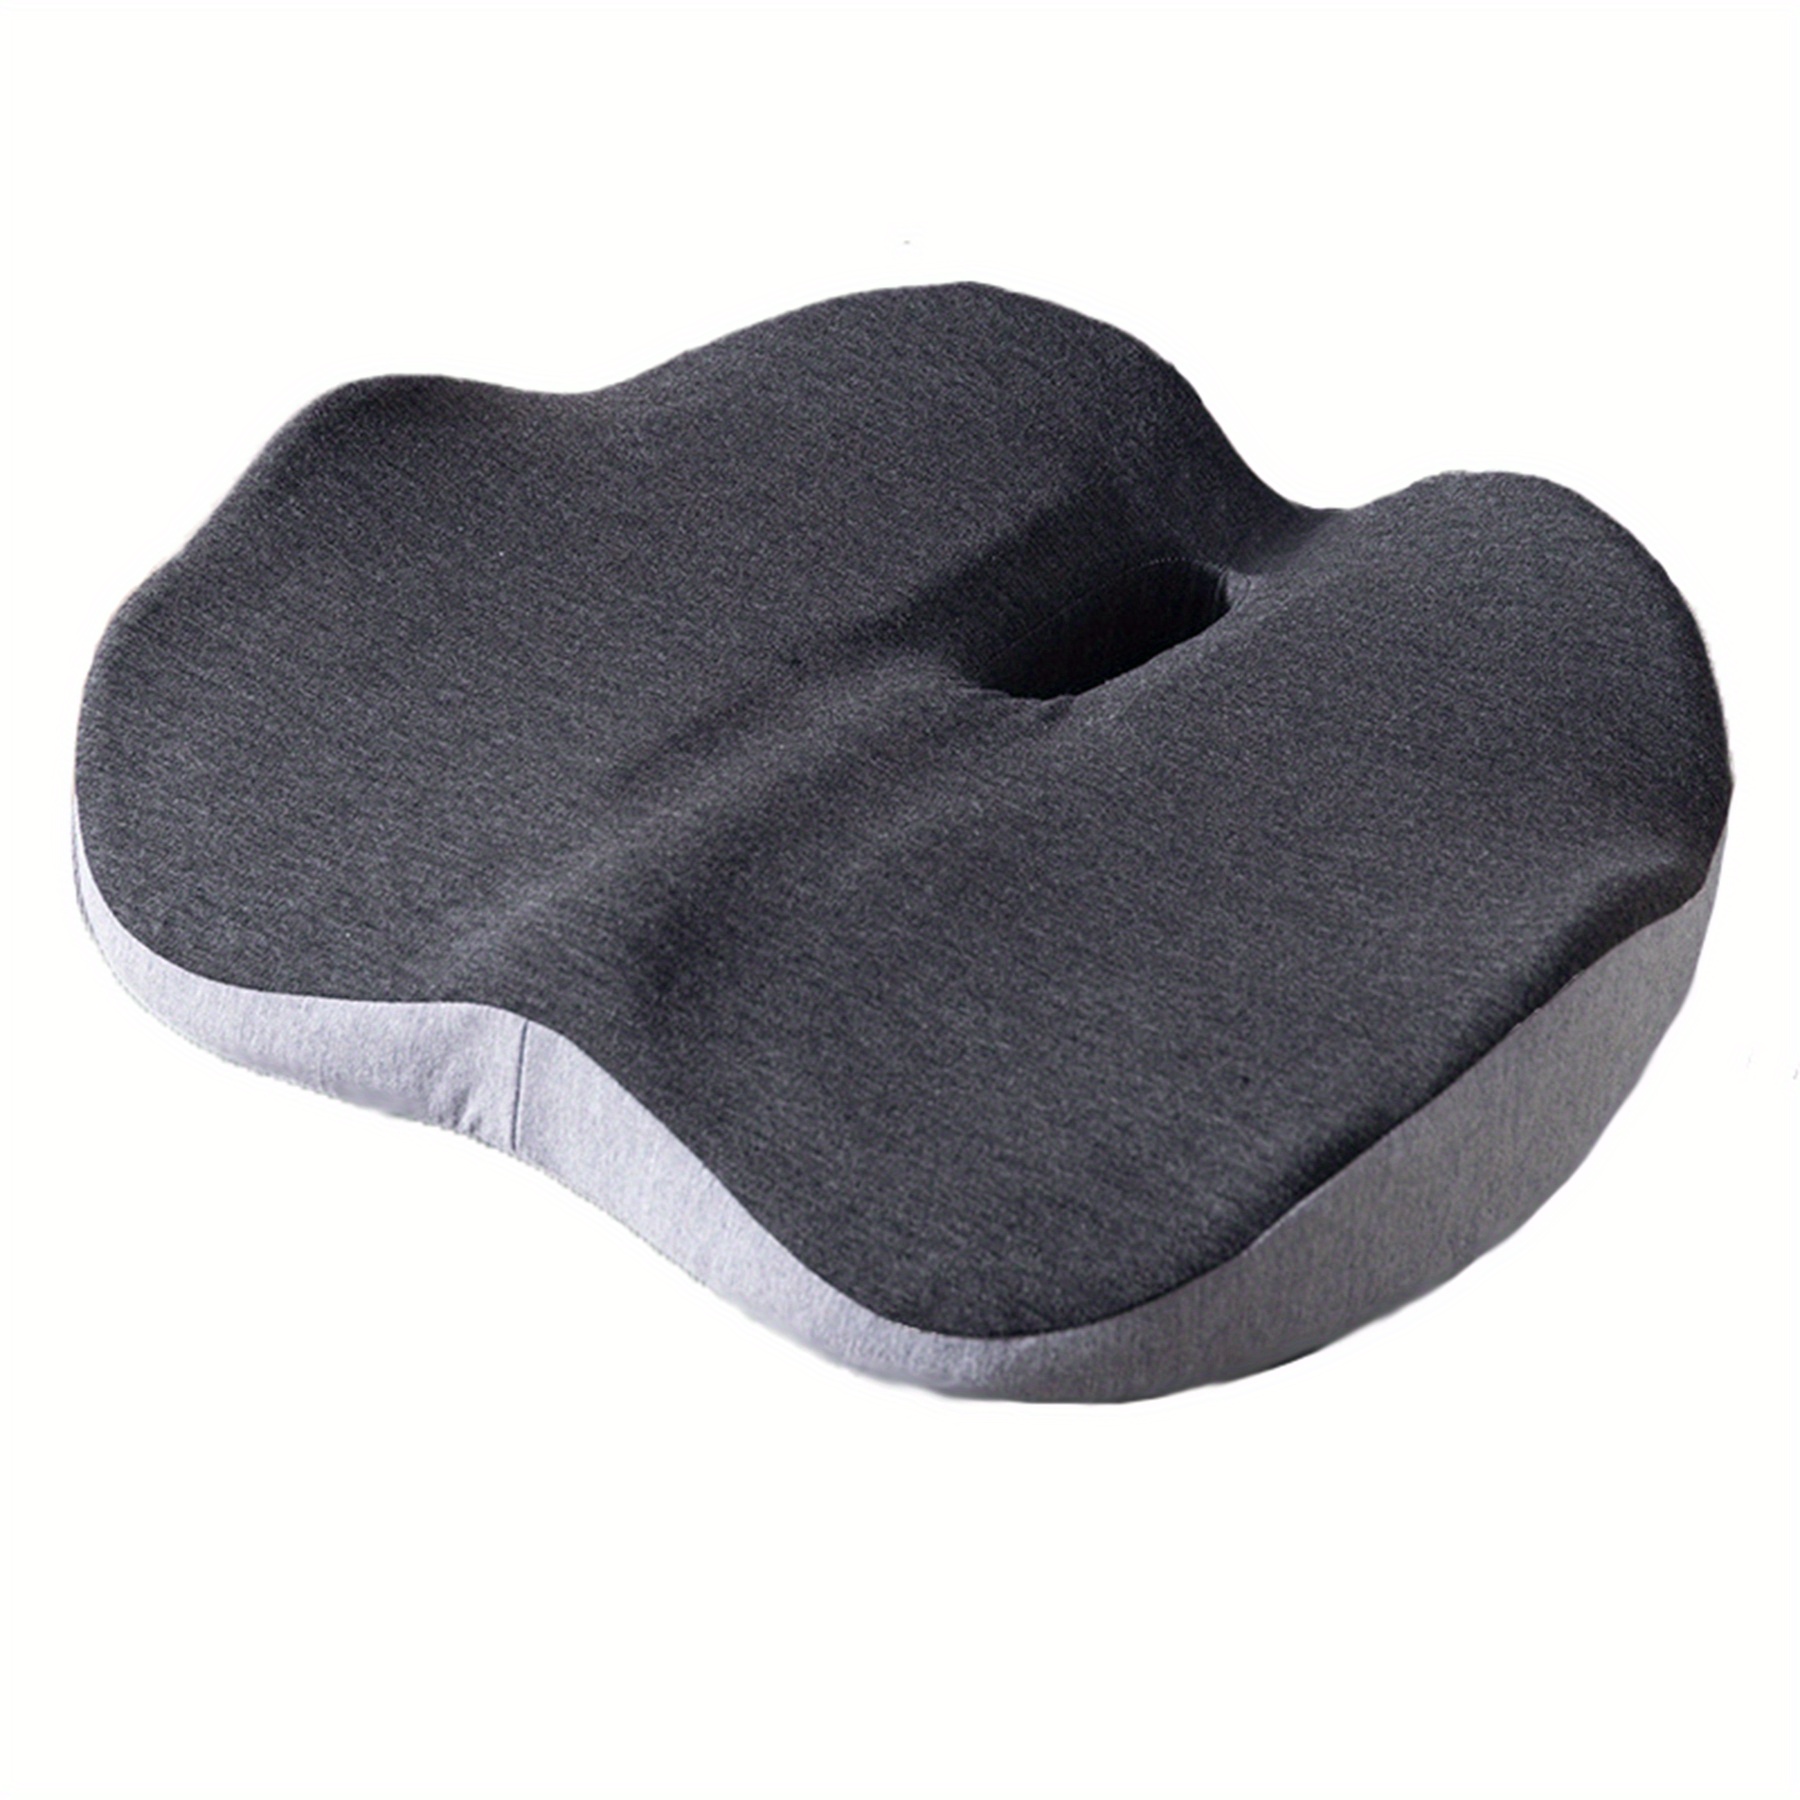 Gel Donut Pillow Cushion Tailbone Hemorrhoid Cushion Coccyx Pain Relief  Cushion